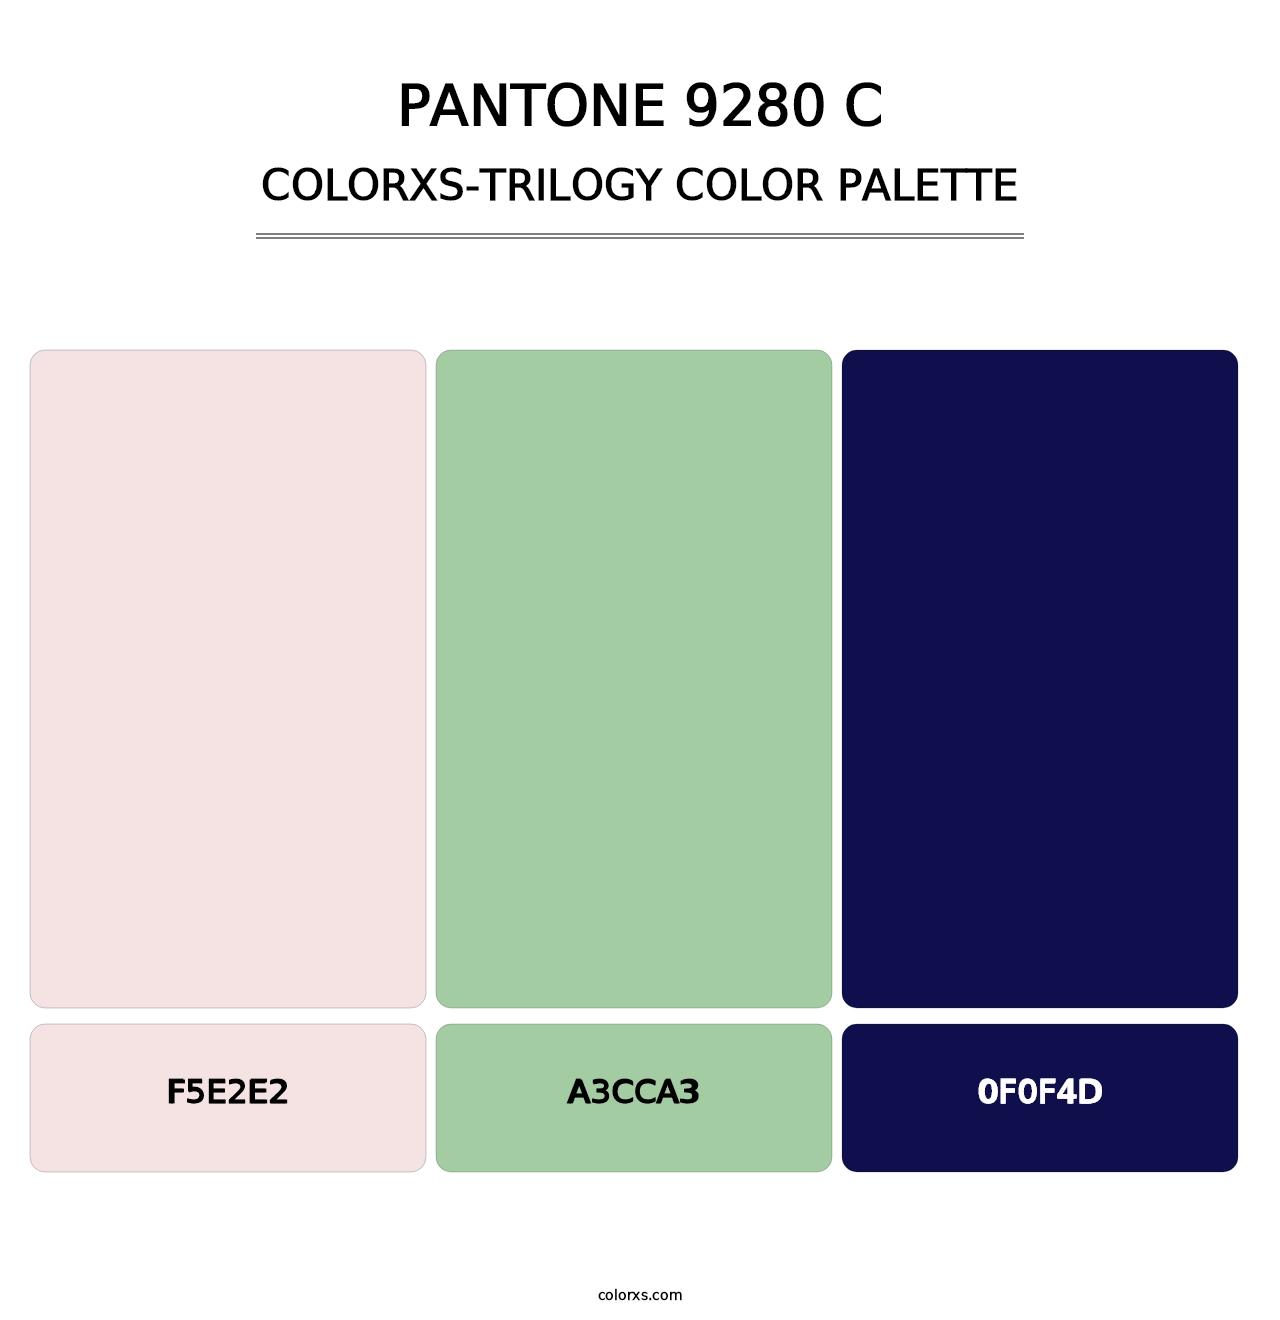 PANTONE 9280 C - Colorxs Trilogy Palette